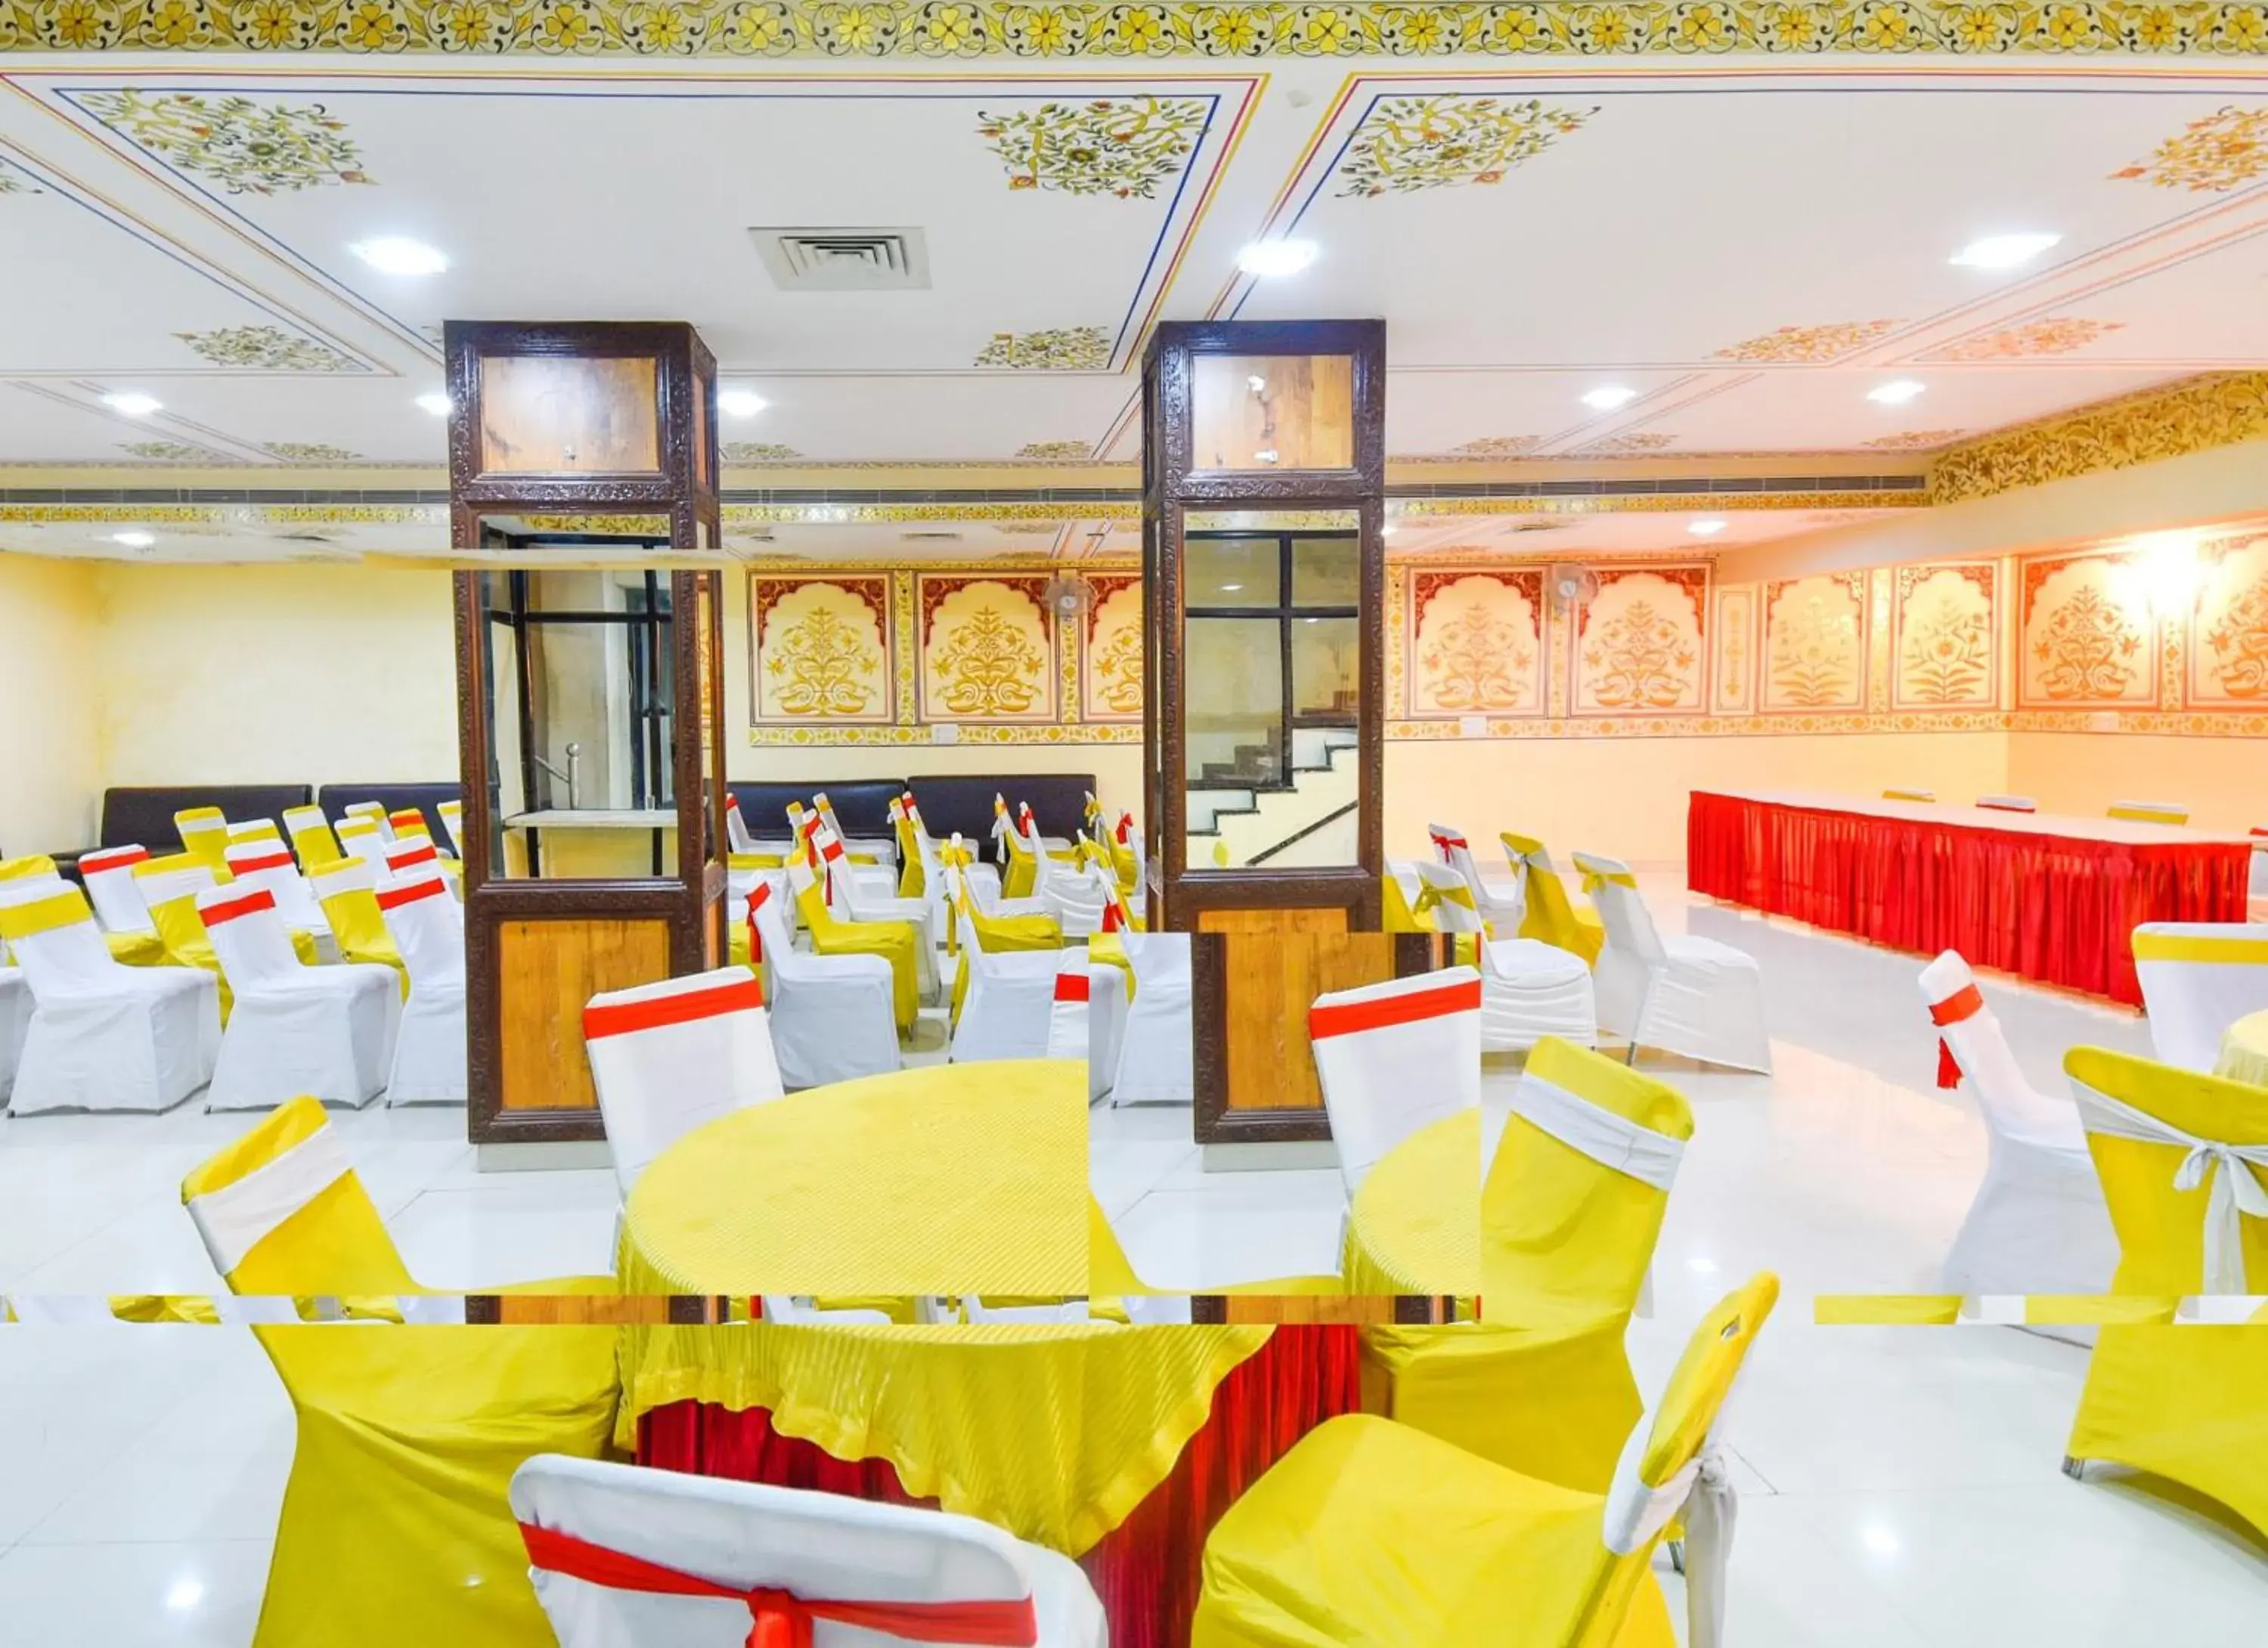 Banquet/Function facilities, Banquet Facilities in Hotel Laxmi Niwas